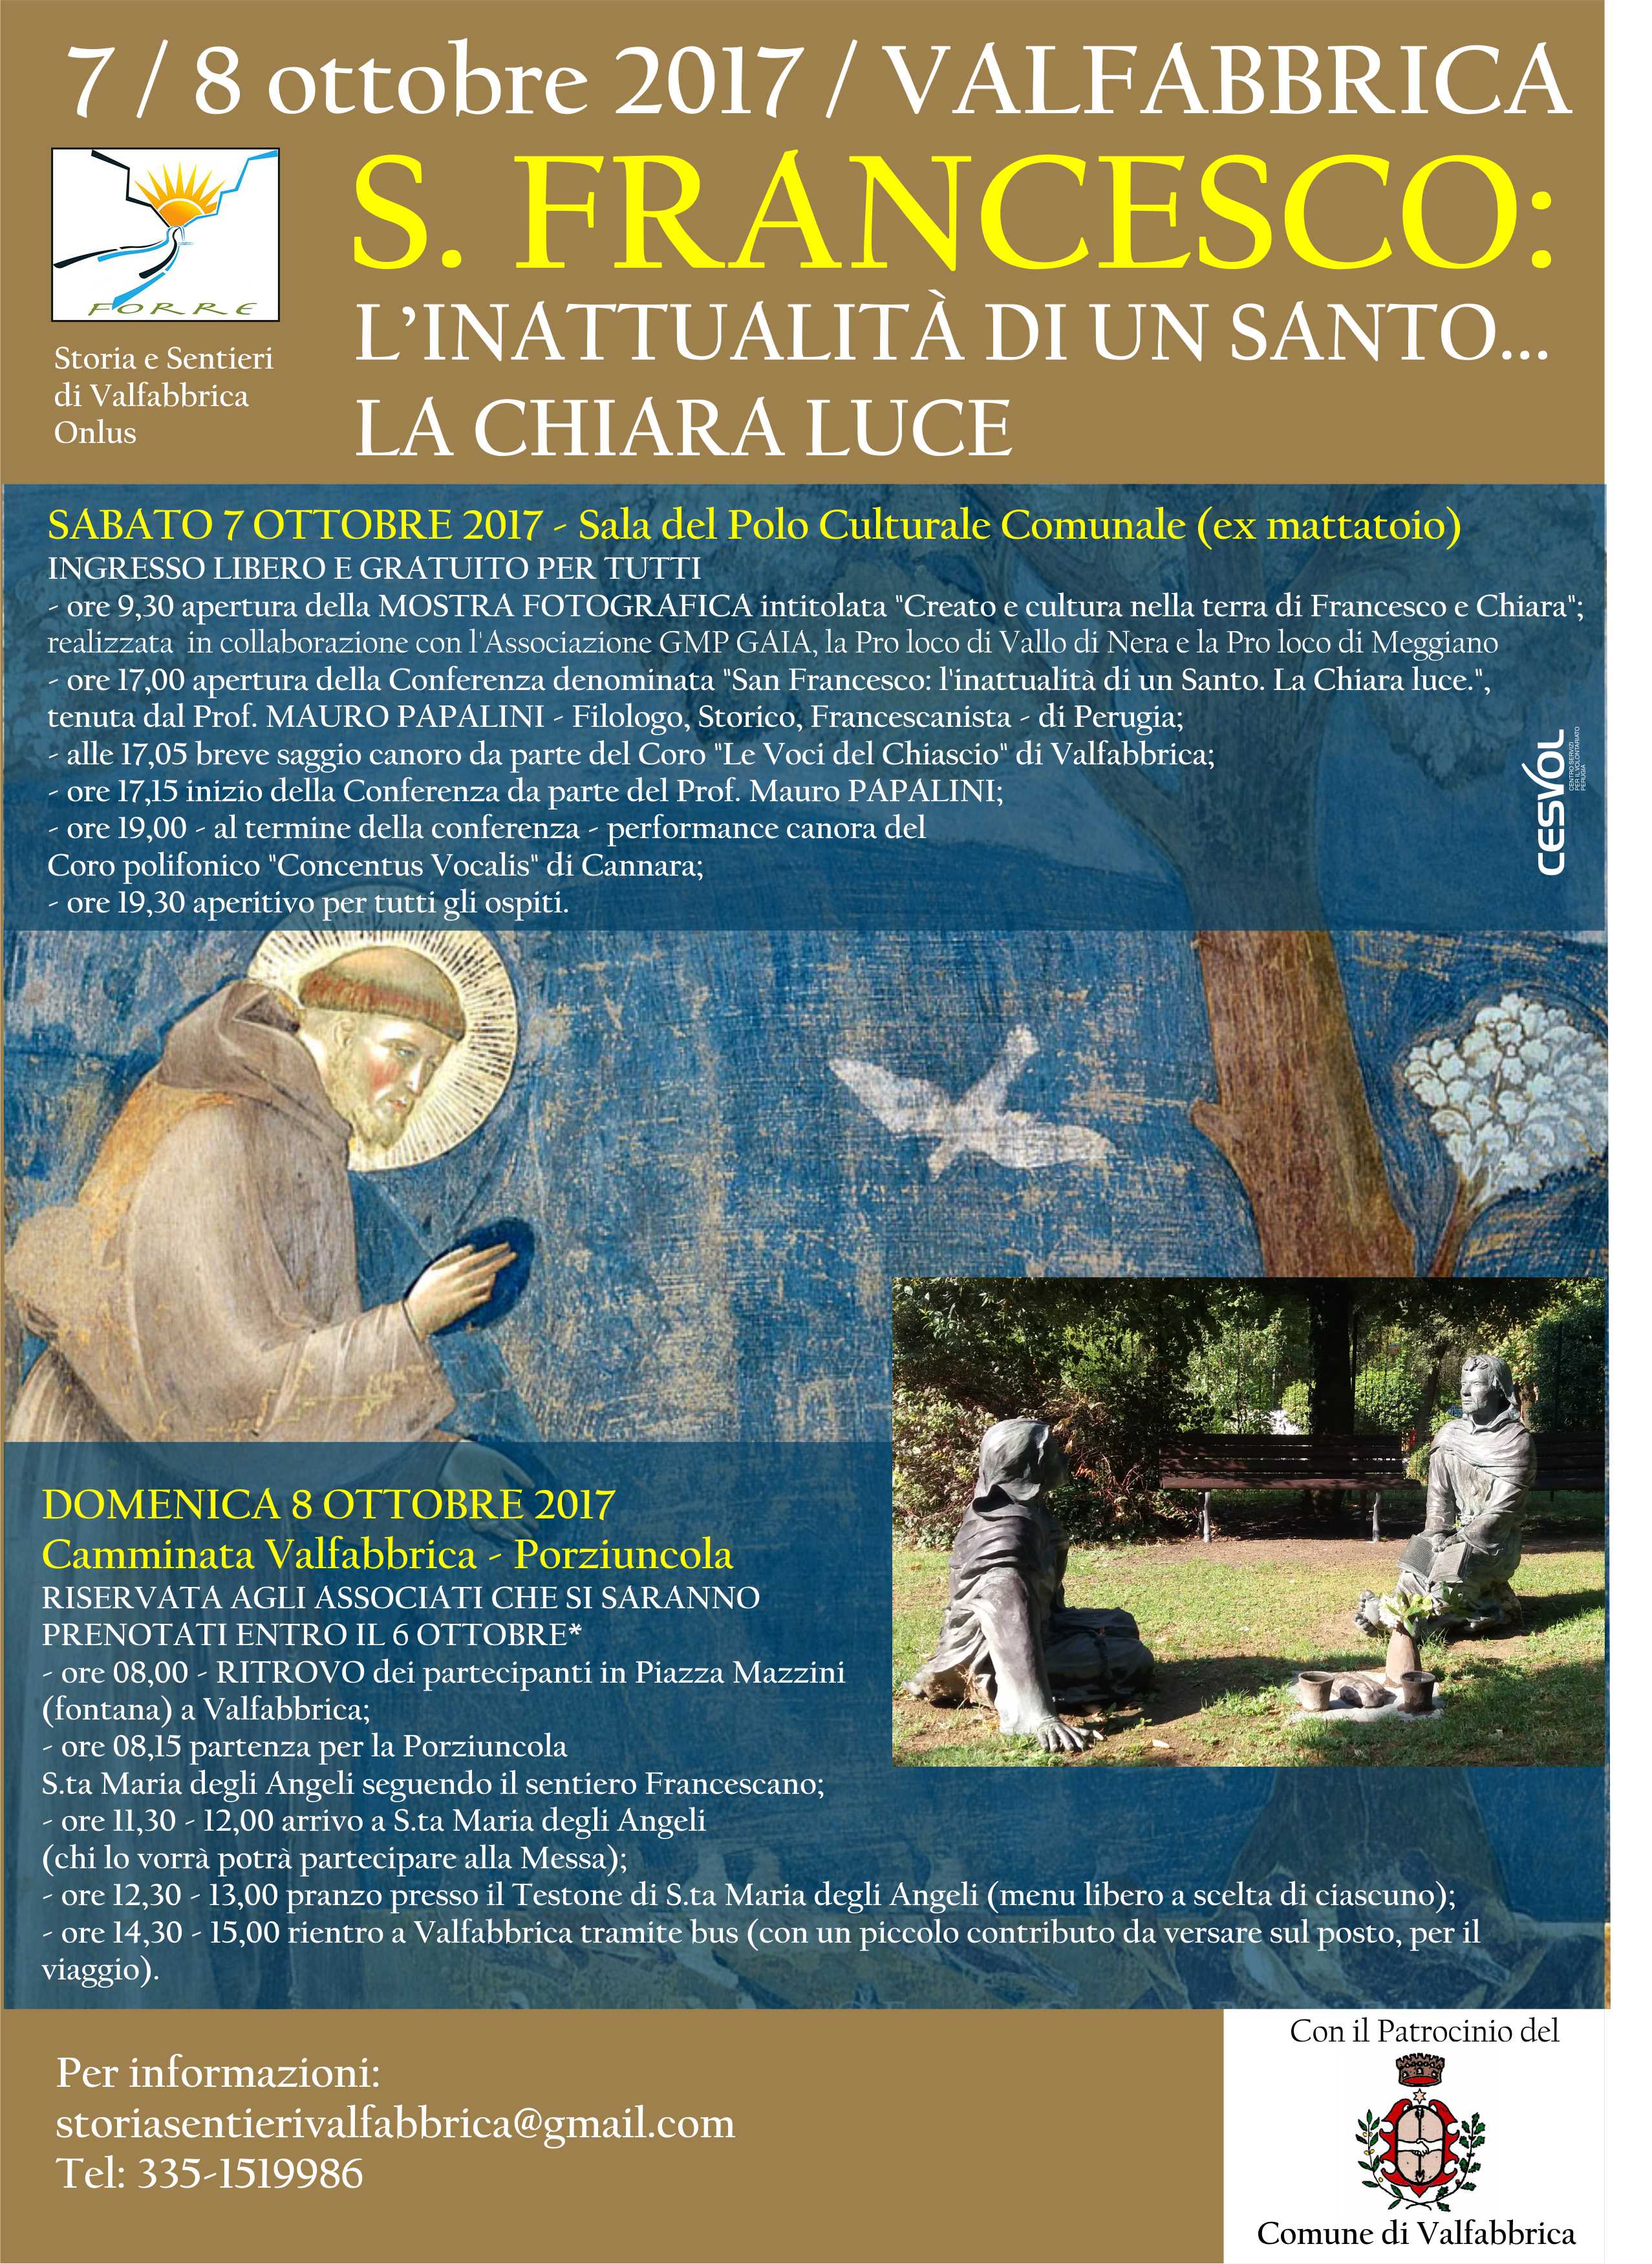 7 ed 8 ottobre 2017 - Conferenza su S. Francesco e camminata ad Assisi 